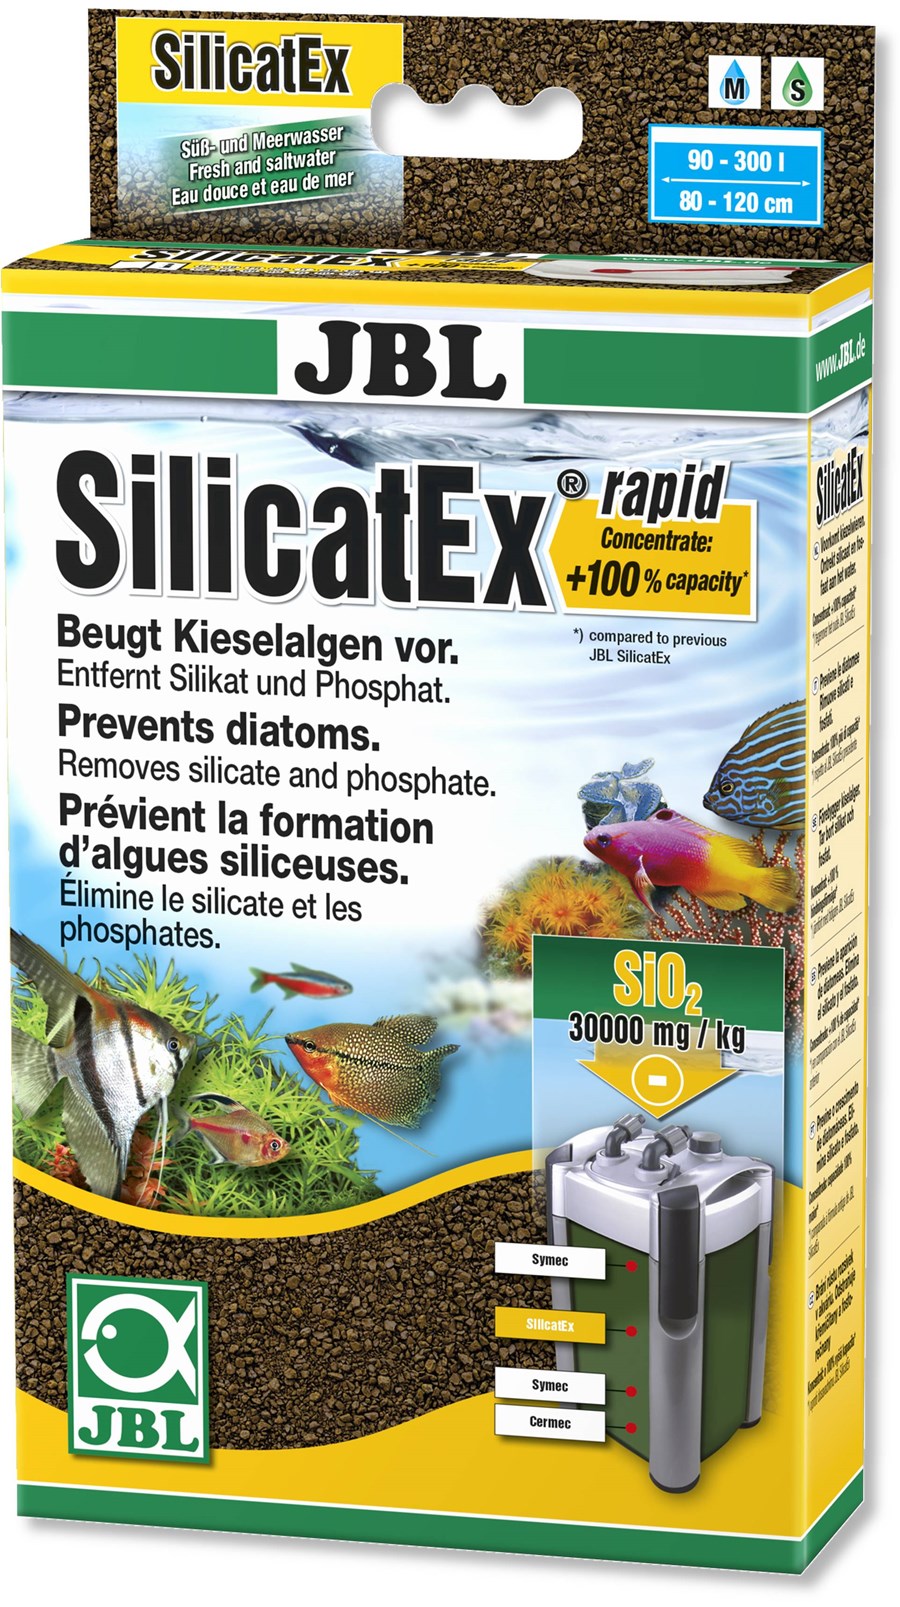 JBL SilicatEx Rapid +100%